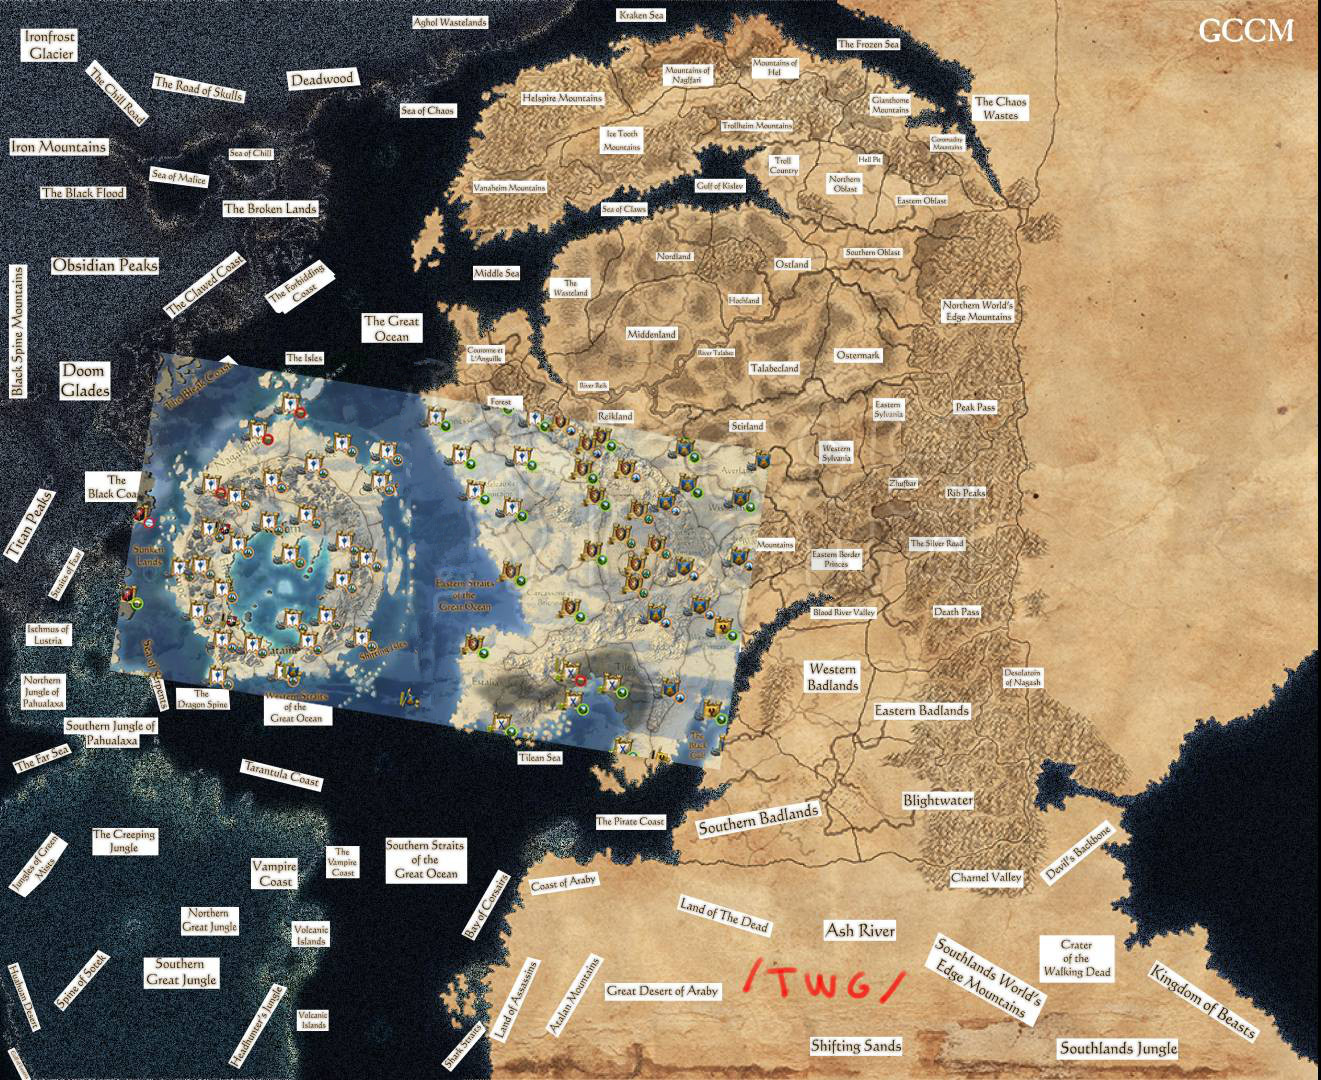 战锤2战役地图图片